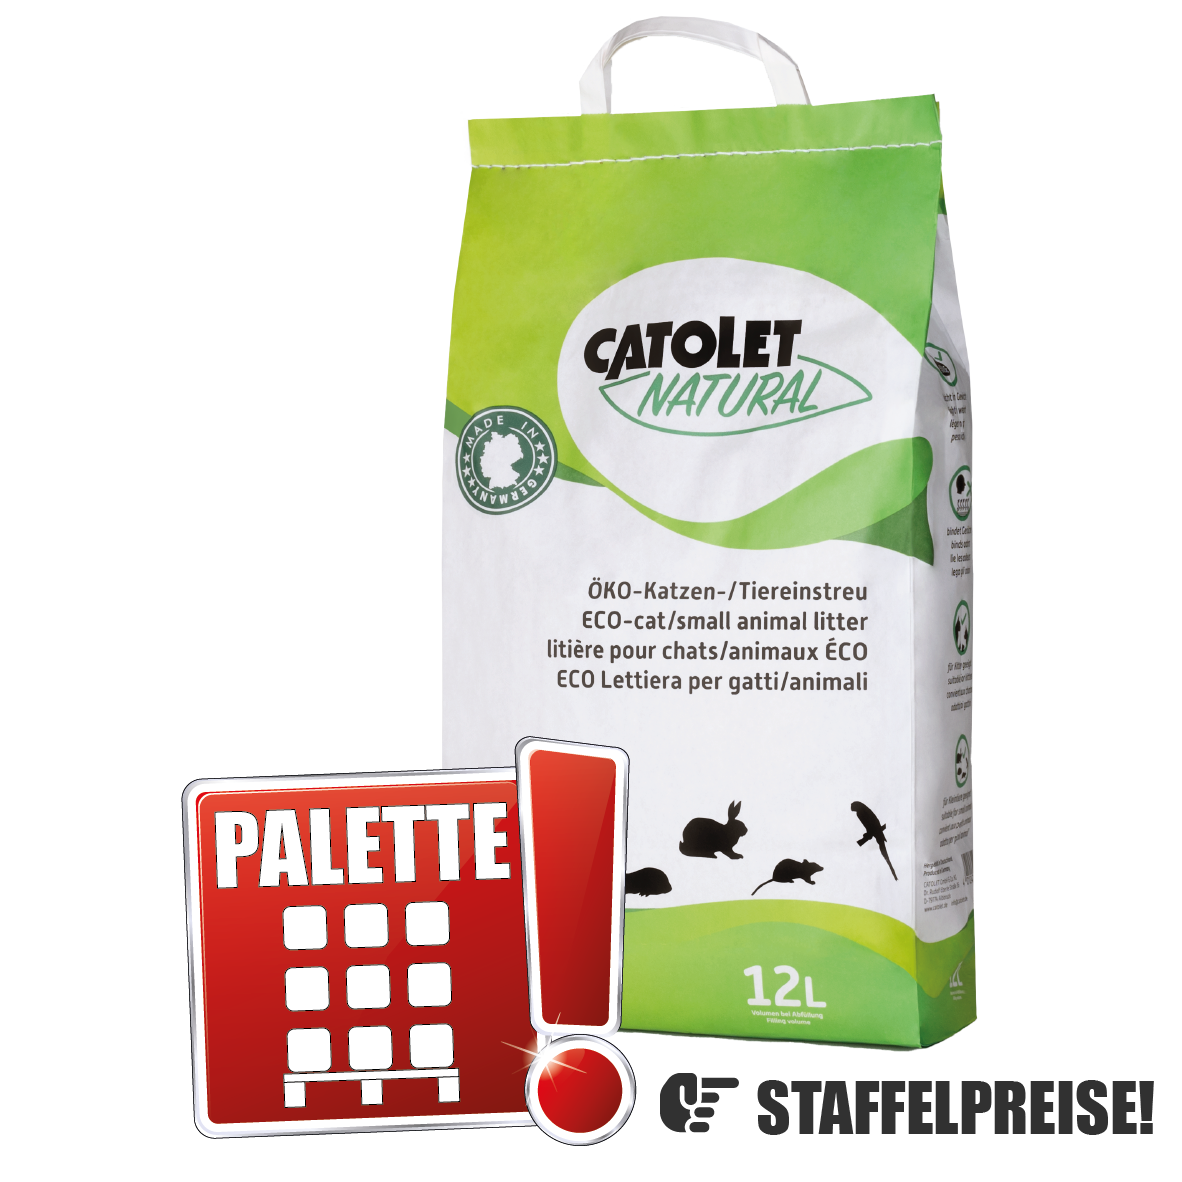 CATOLET NATURAL ÖKO-Katzen-/Tiereinstreu 60L (5 Beutel à 12L) Pallette